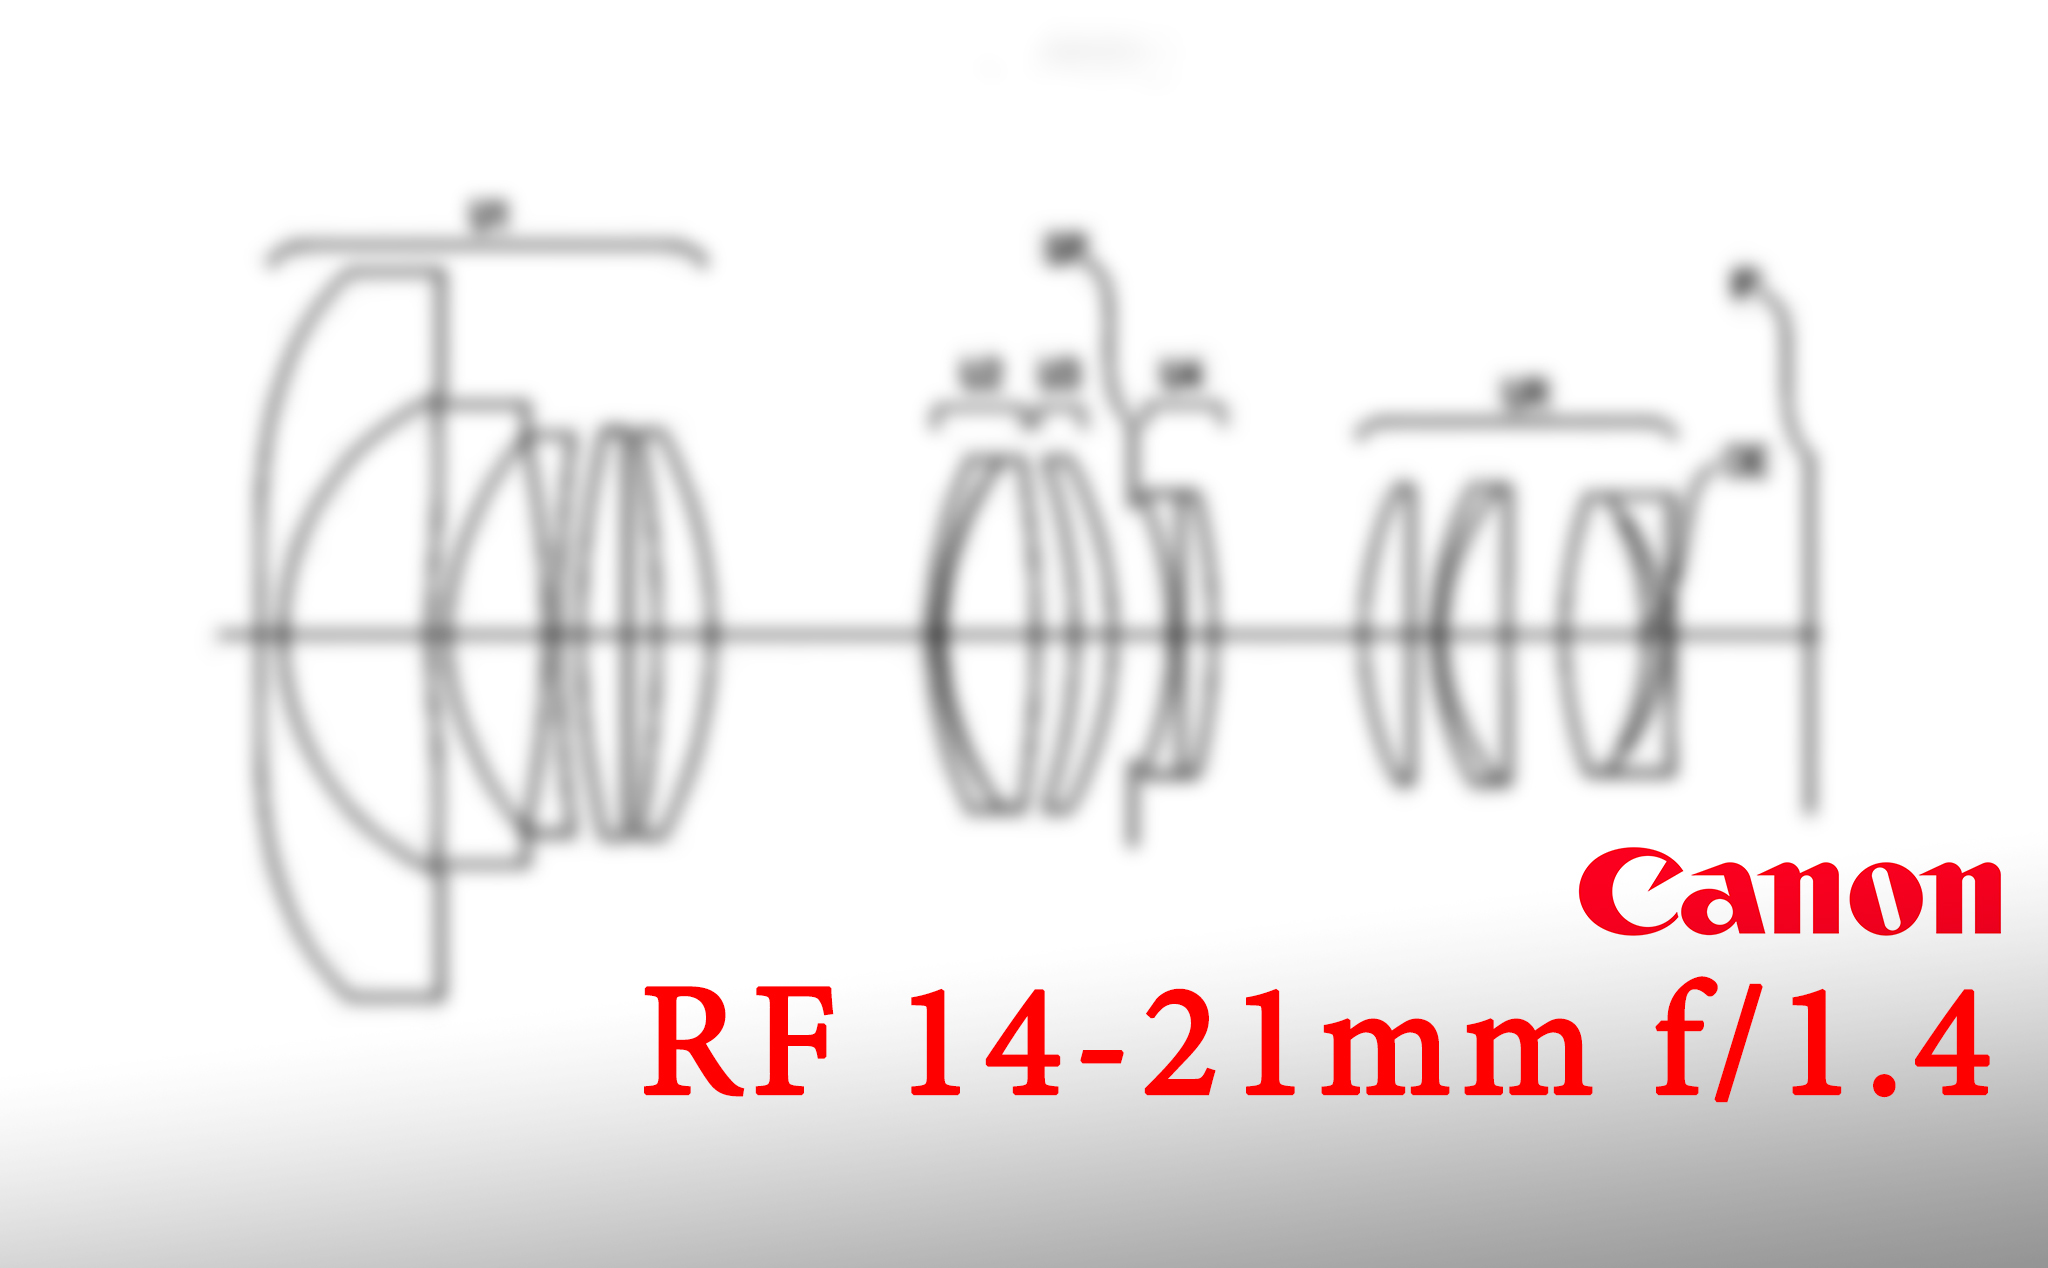 Lộ bằng sáng chế Canon RF 14-21mm f/1.4: Góc rộng, mở lớn